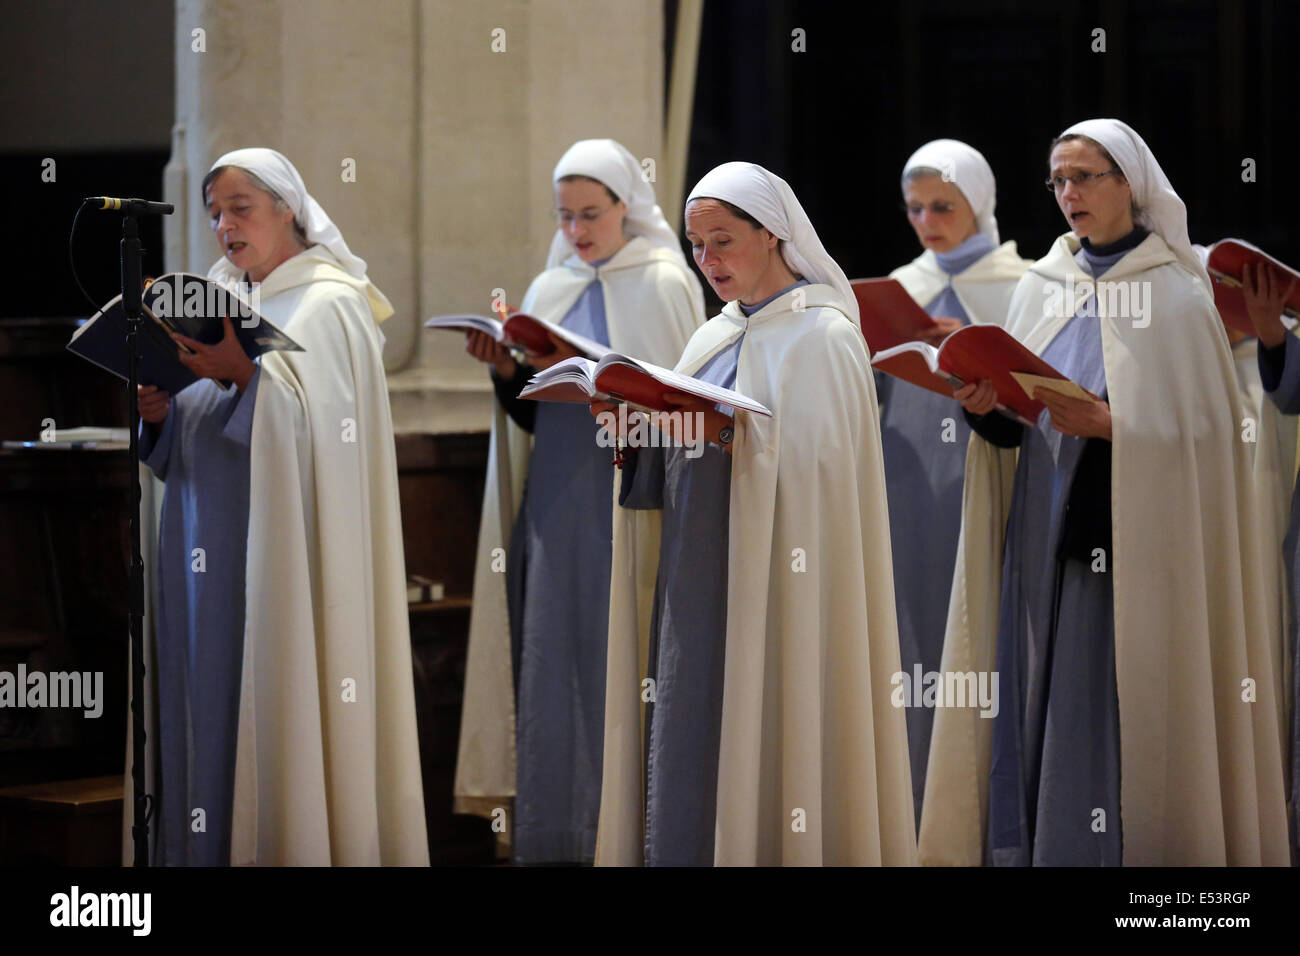 Hermanas catolicas romanas fotografías e imágenes de alta resolución - Alamy